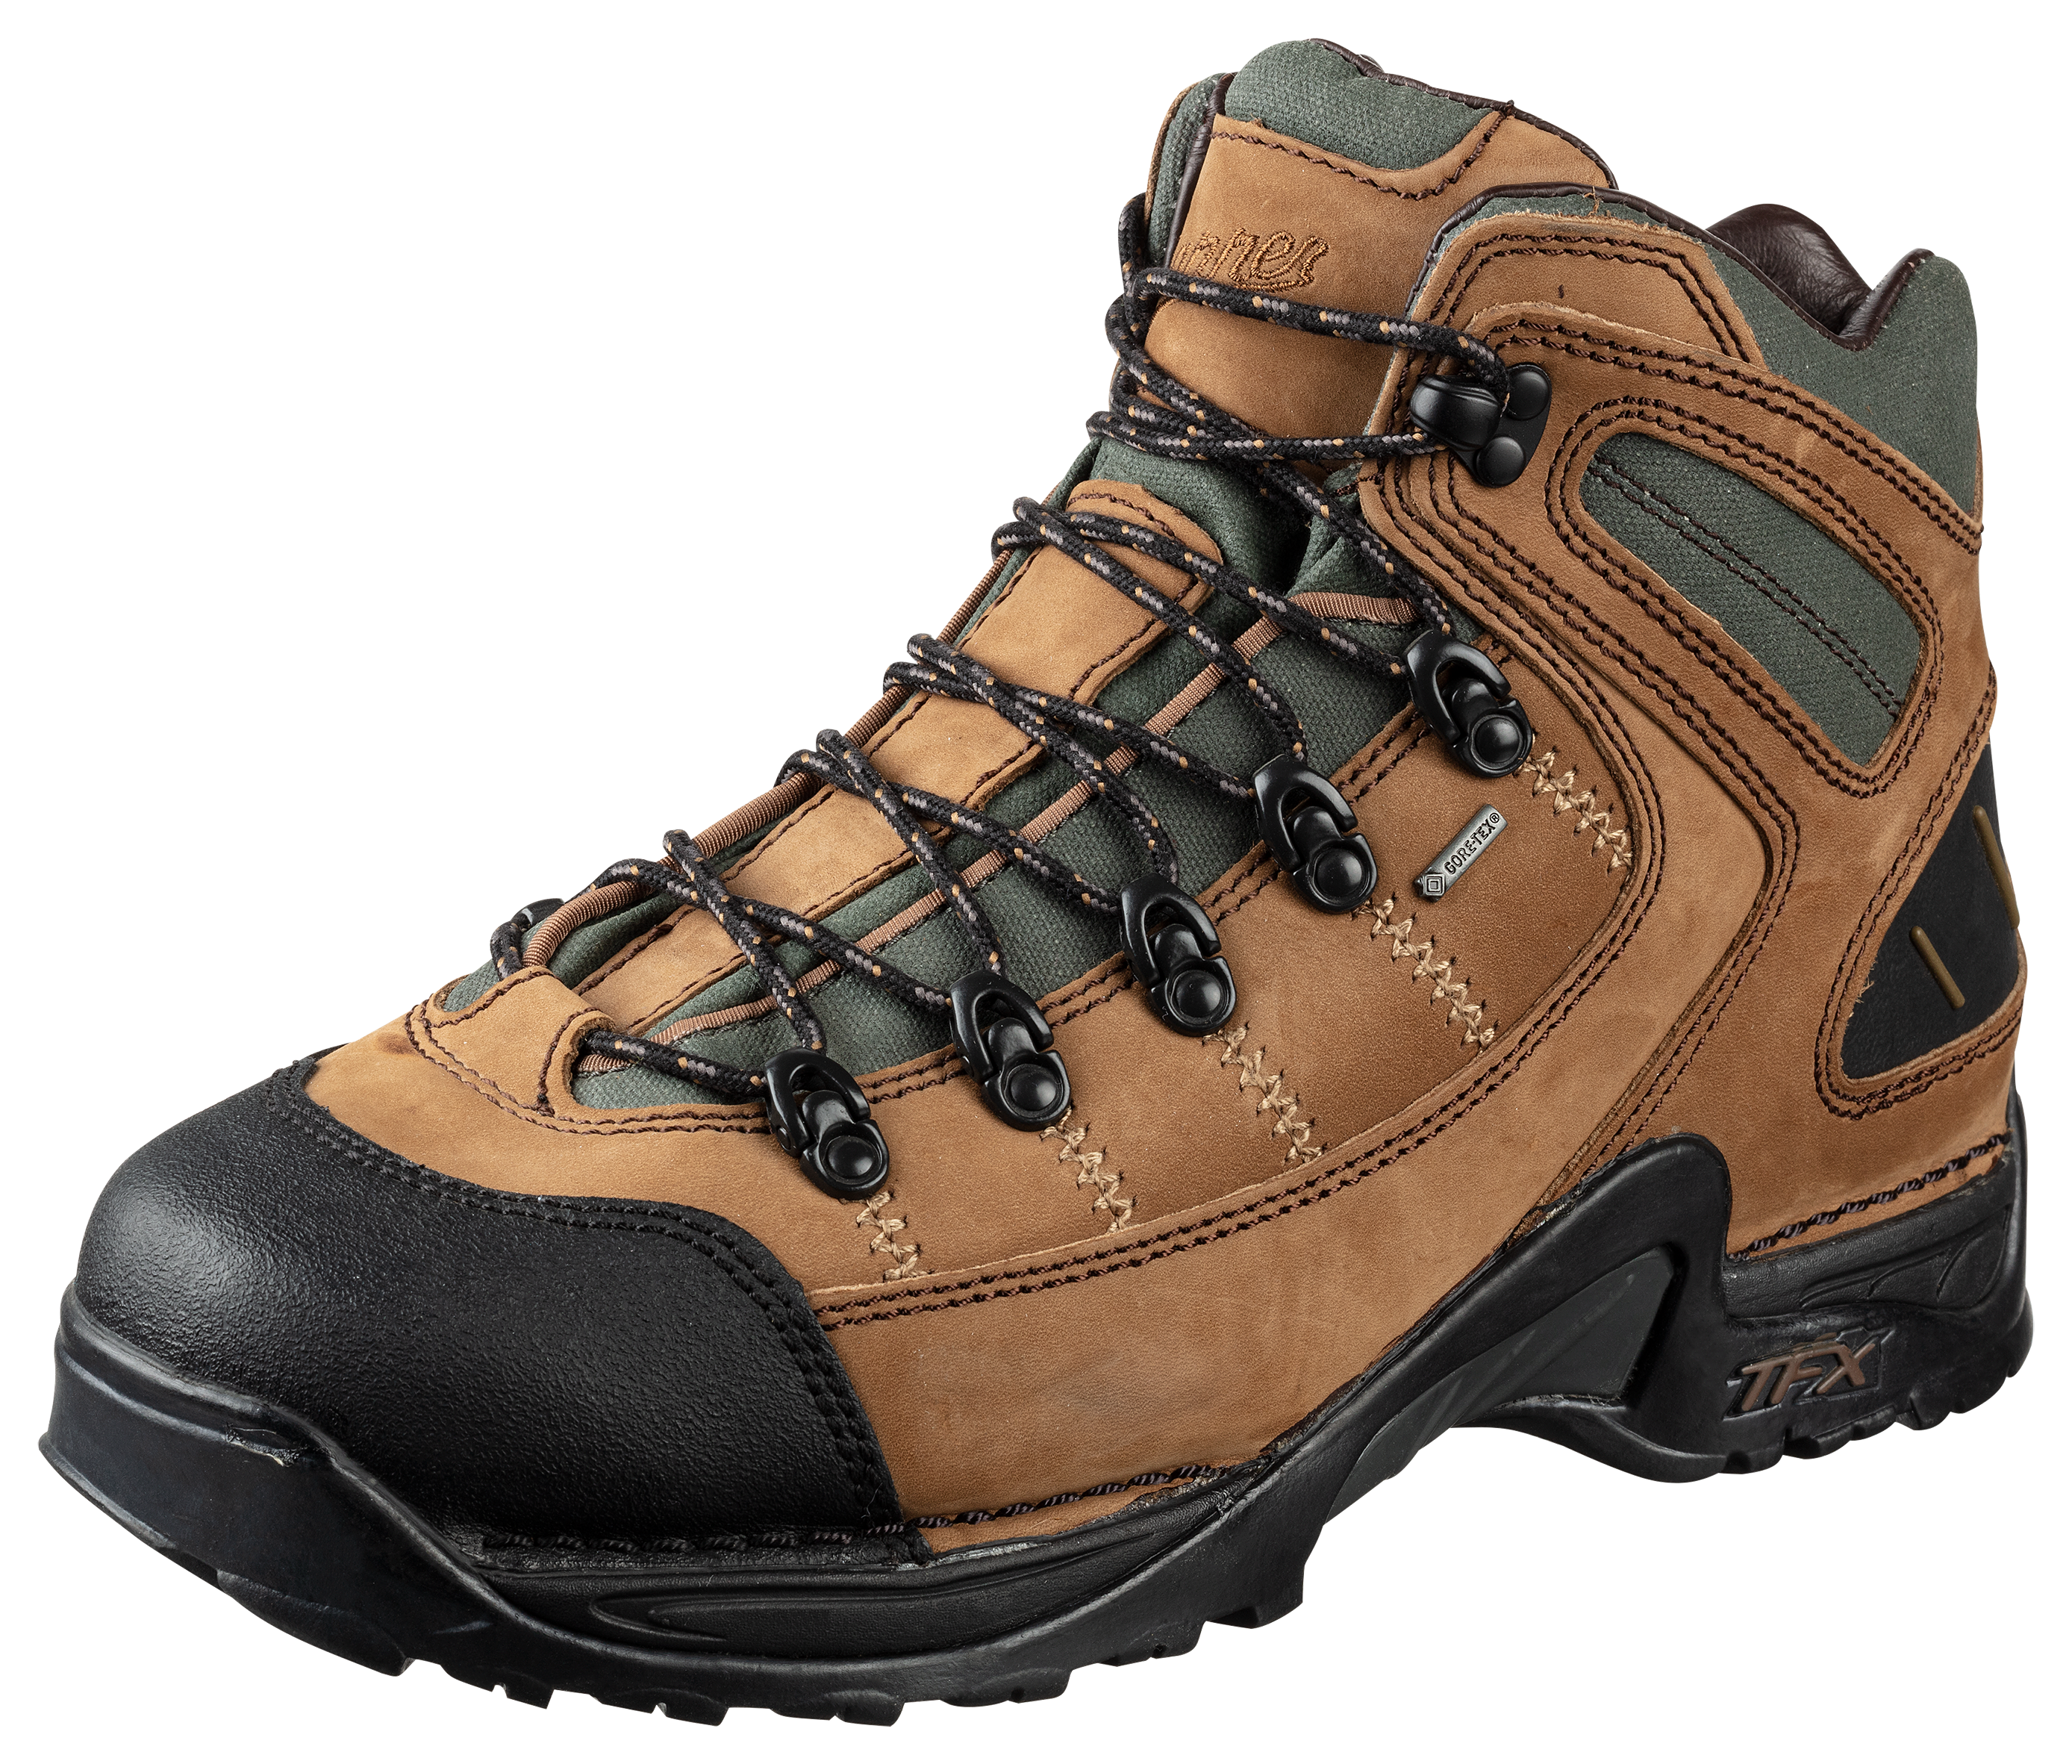 Danner 453 GORE-TEX Waterproof Hiking Boots for Men - Dark Tan - 9M